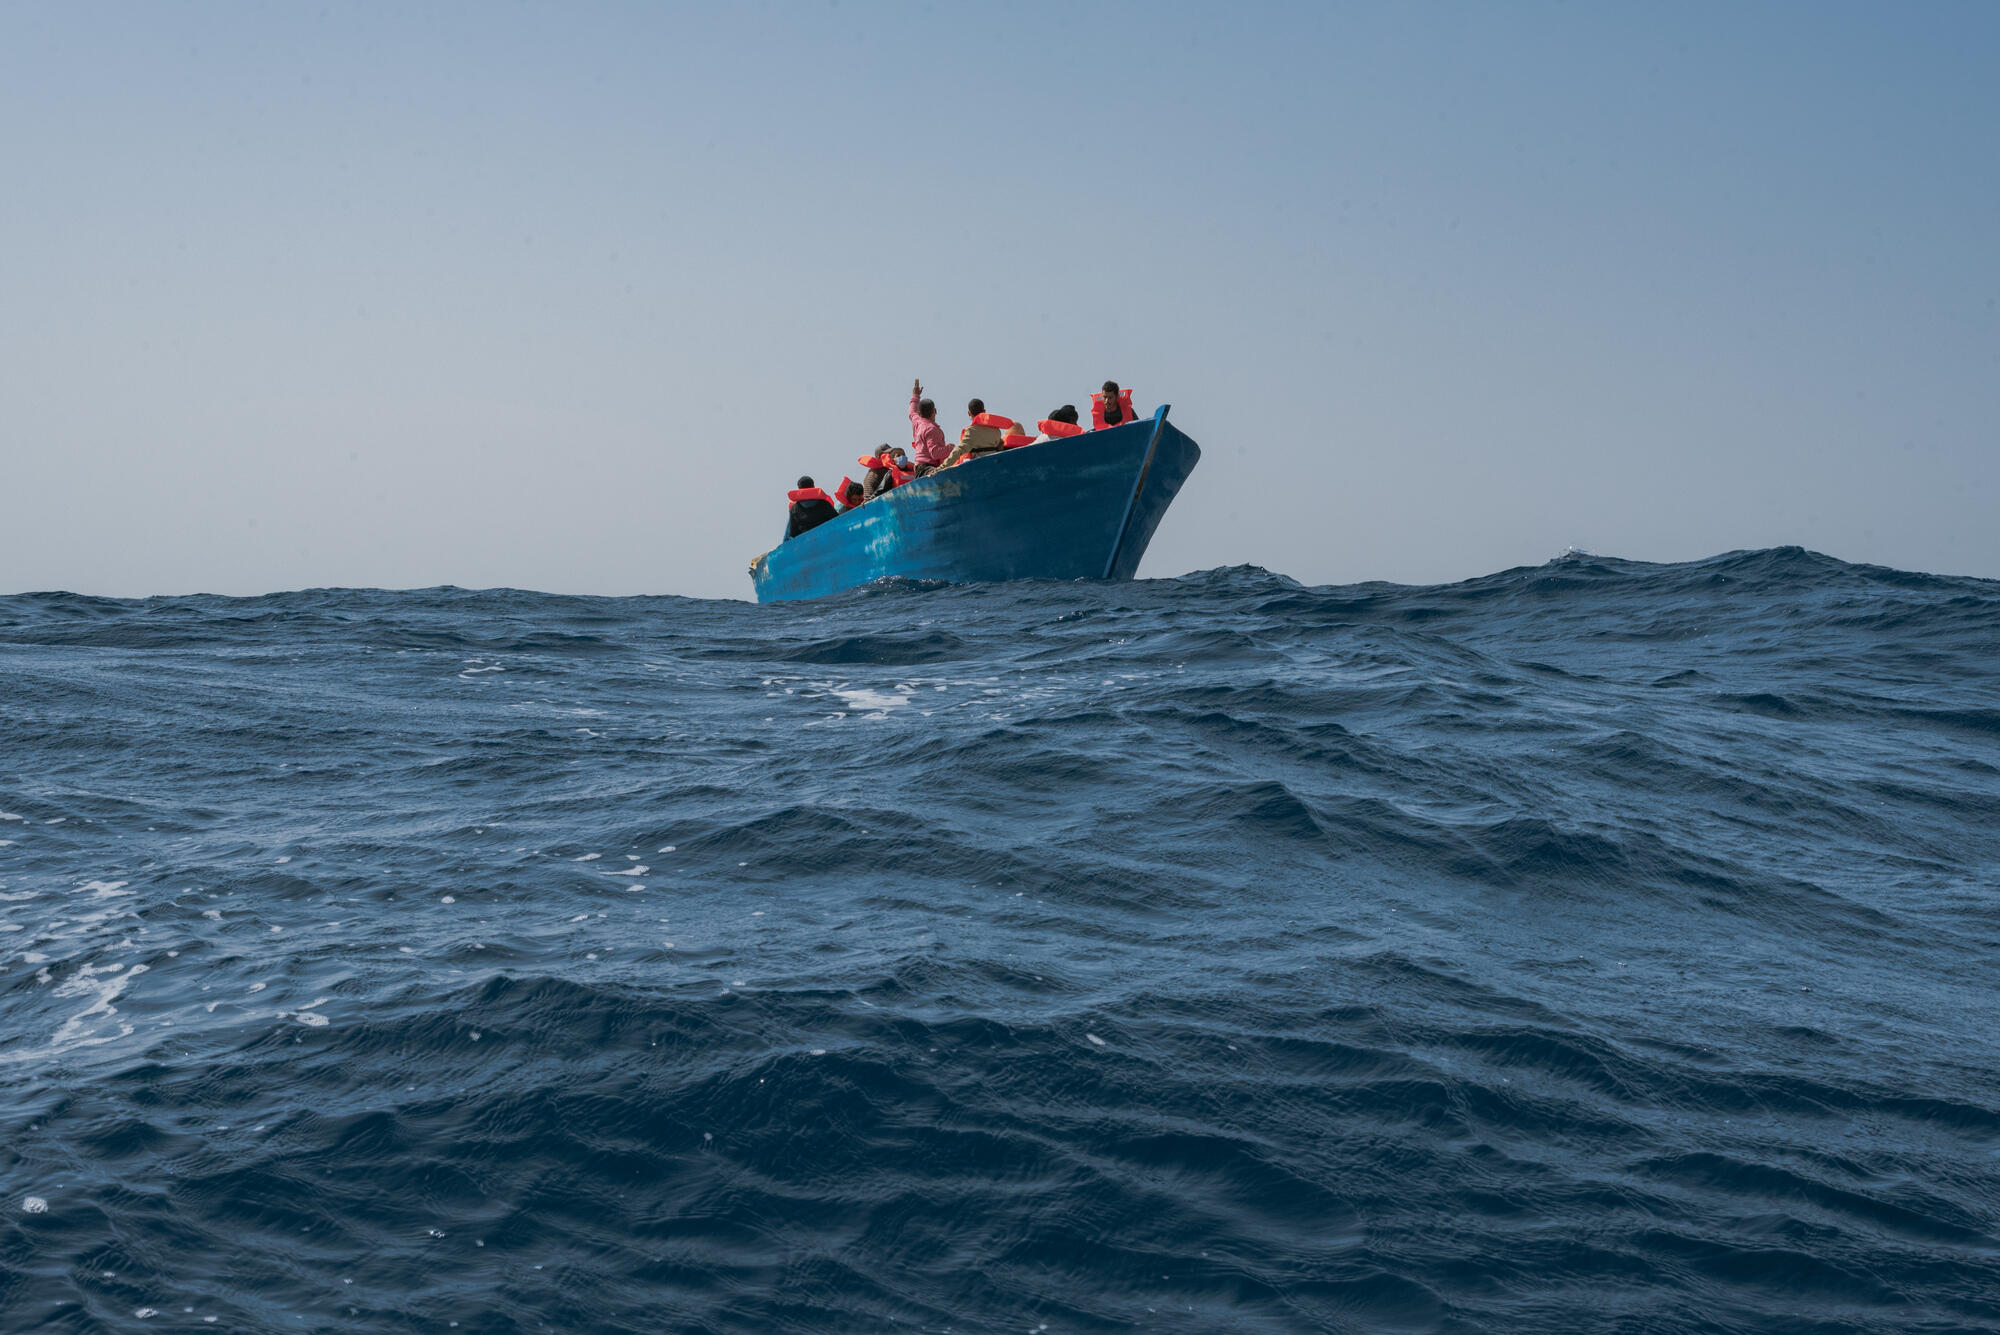  صحيفة يونانية: مسار جديد لقوارب الهجرة غير النظامية من ليبيا .